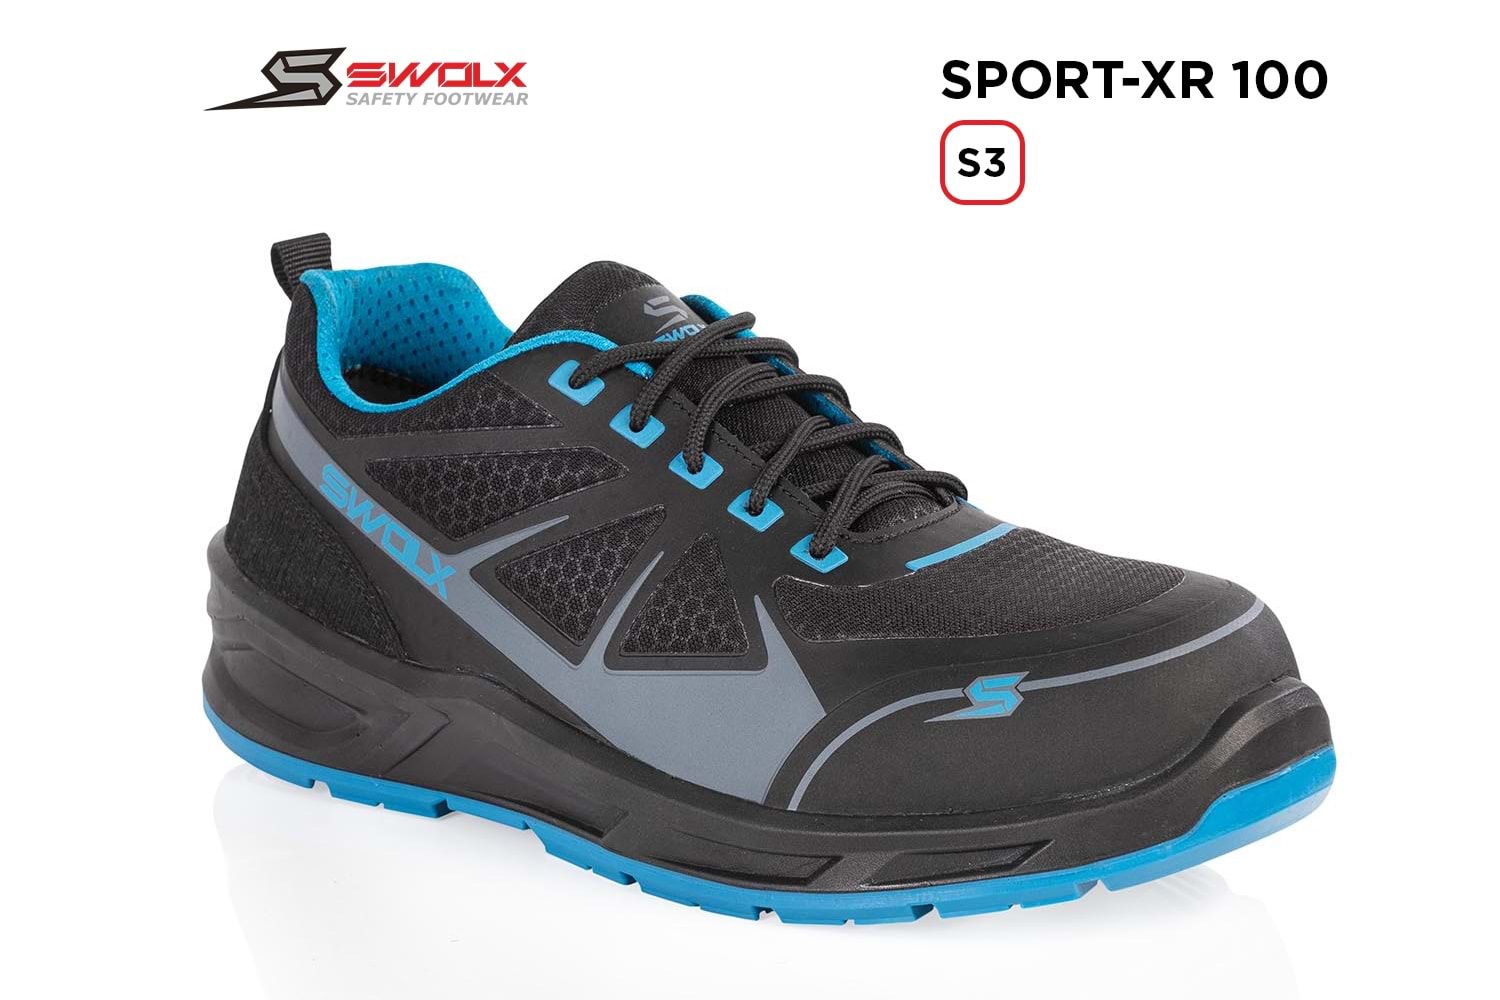 Swolx İş Ayakkabısı - Sport-Xr 100 S3 - 42